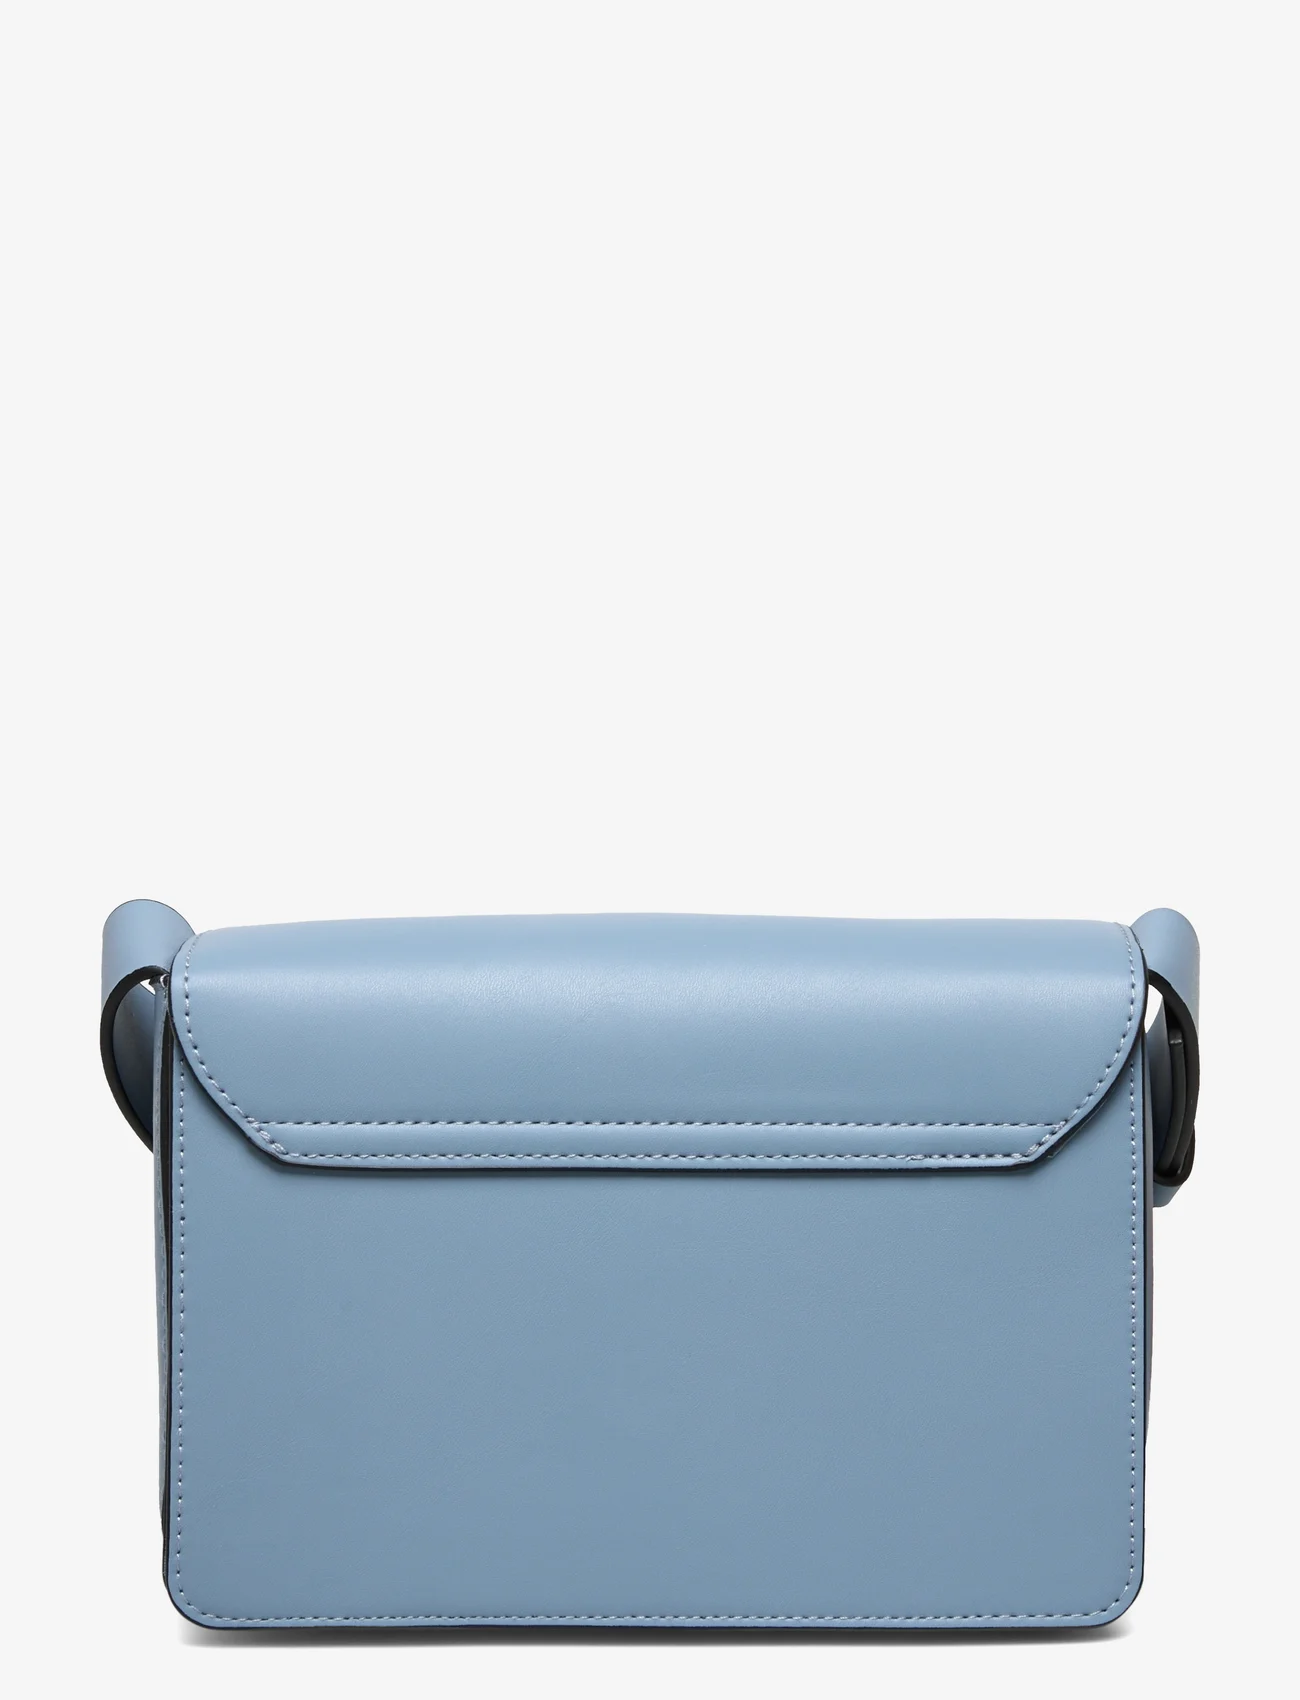 Lindex - Bag Clean look - najniższe ceny - light dusty blue - 1